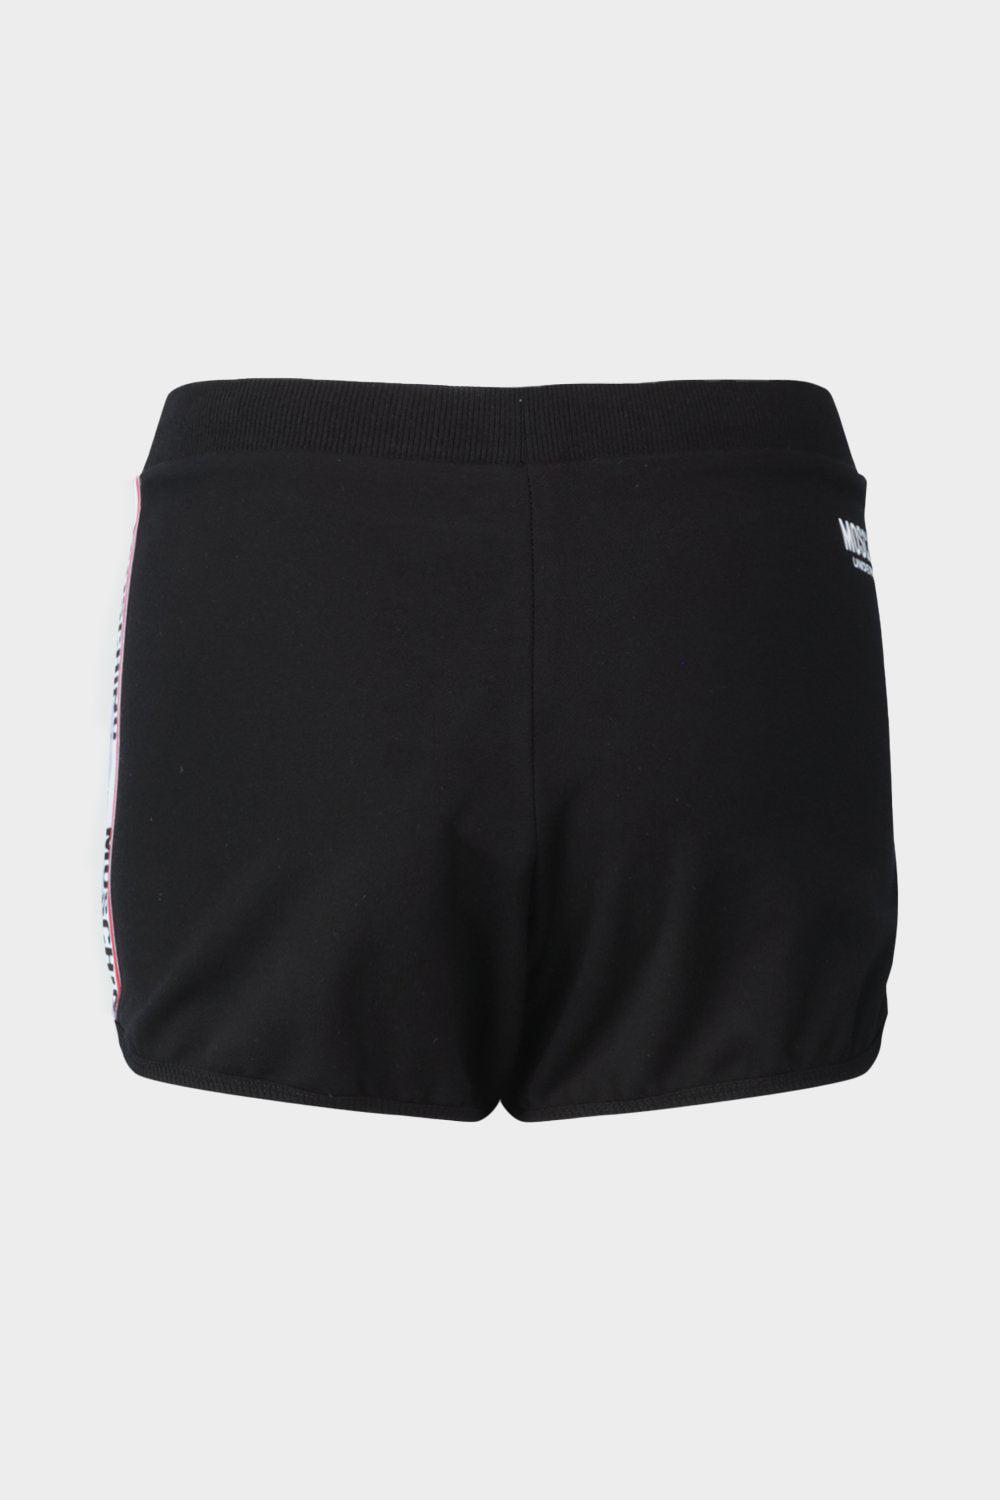 מכנסיים קצרים לנשים לוגו MOSCHINO Vendome online | ונדום .